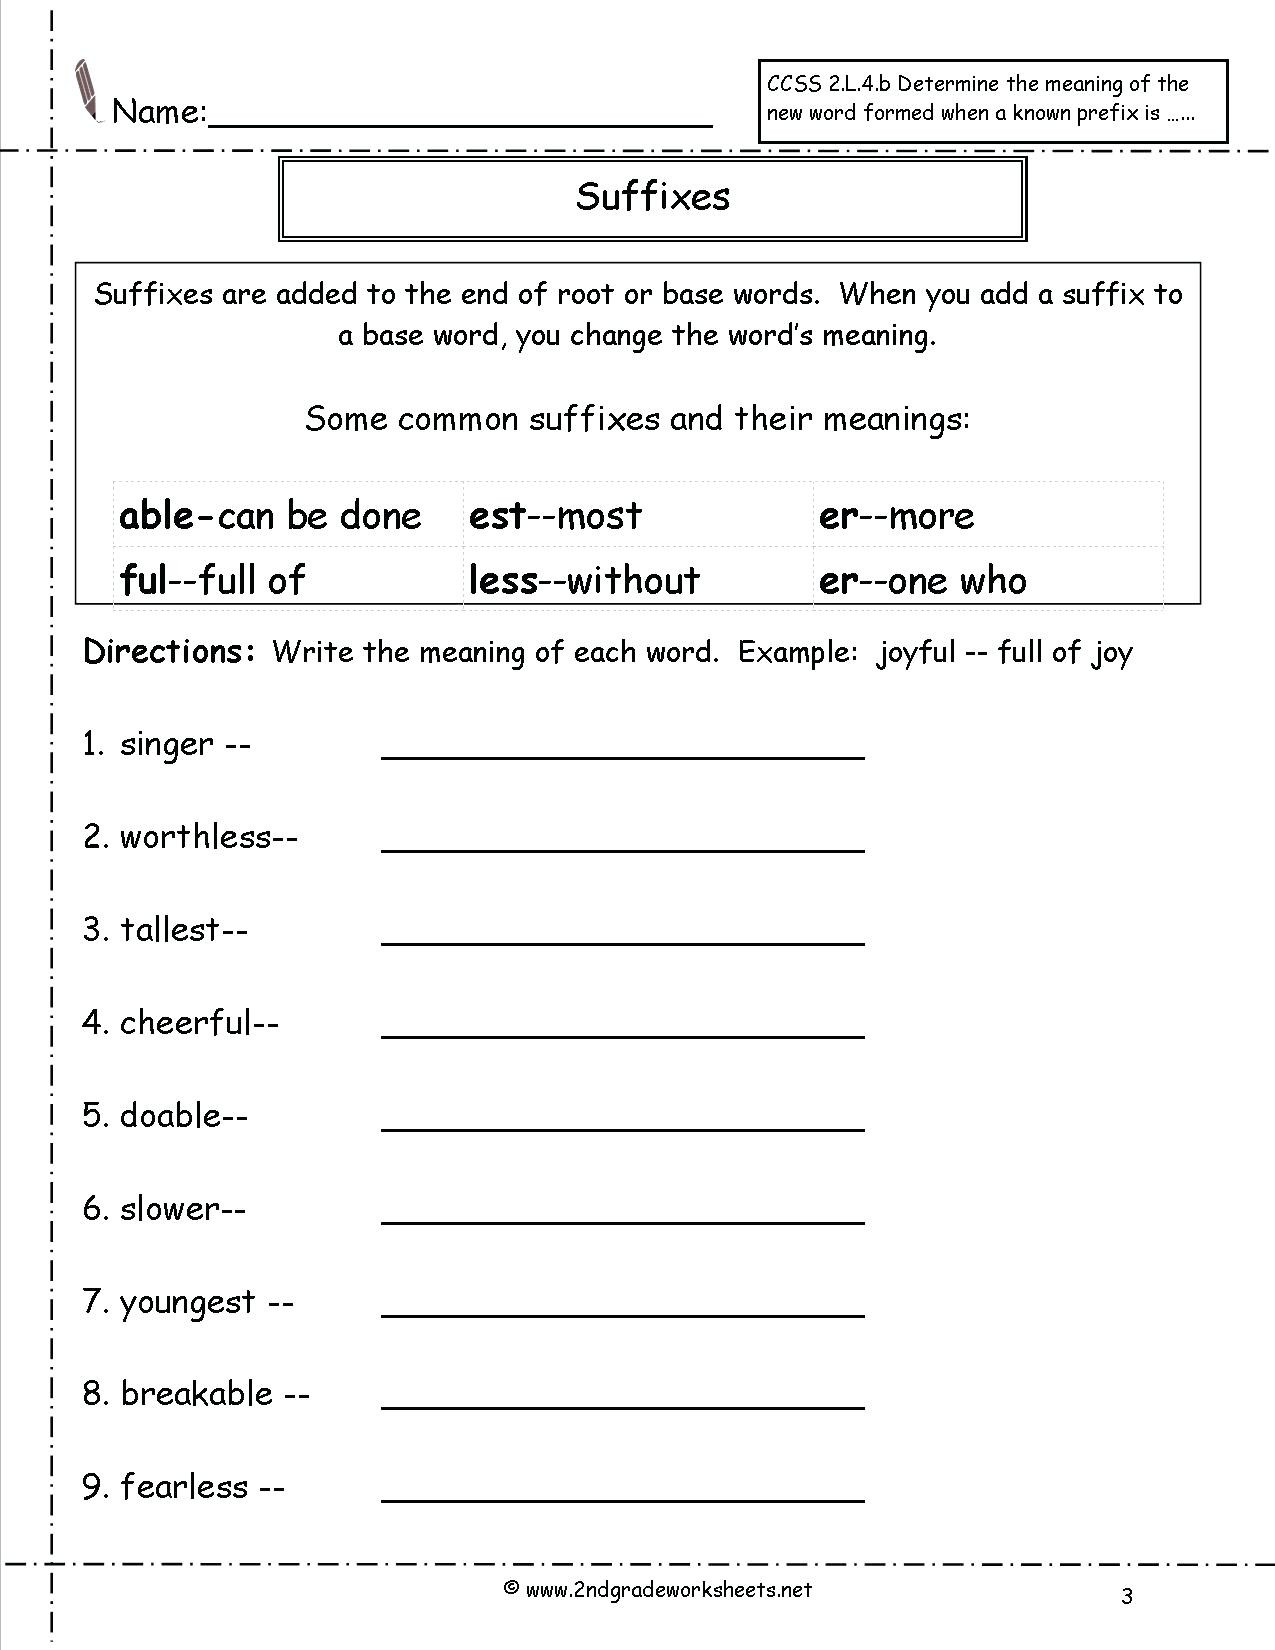 Suffix Worksheets 3rd Grade 3rd Grade Prefixes and Suffixes Worksheets Whats the Prefix